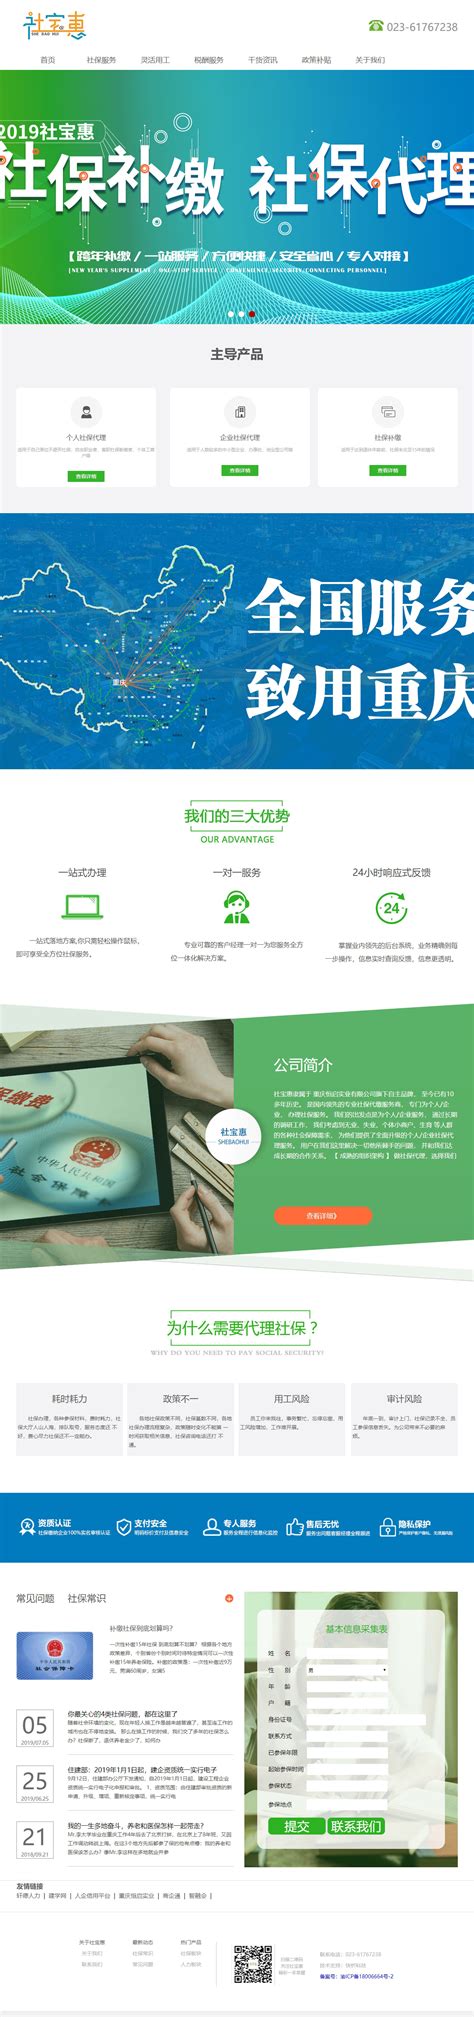 重庆公司网站制作方法